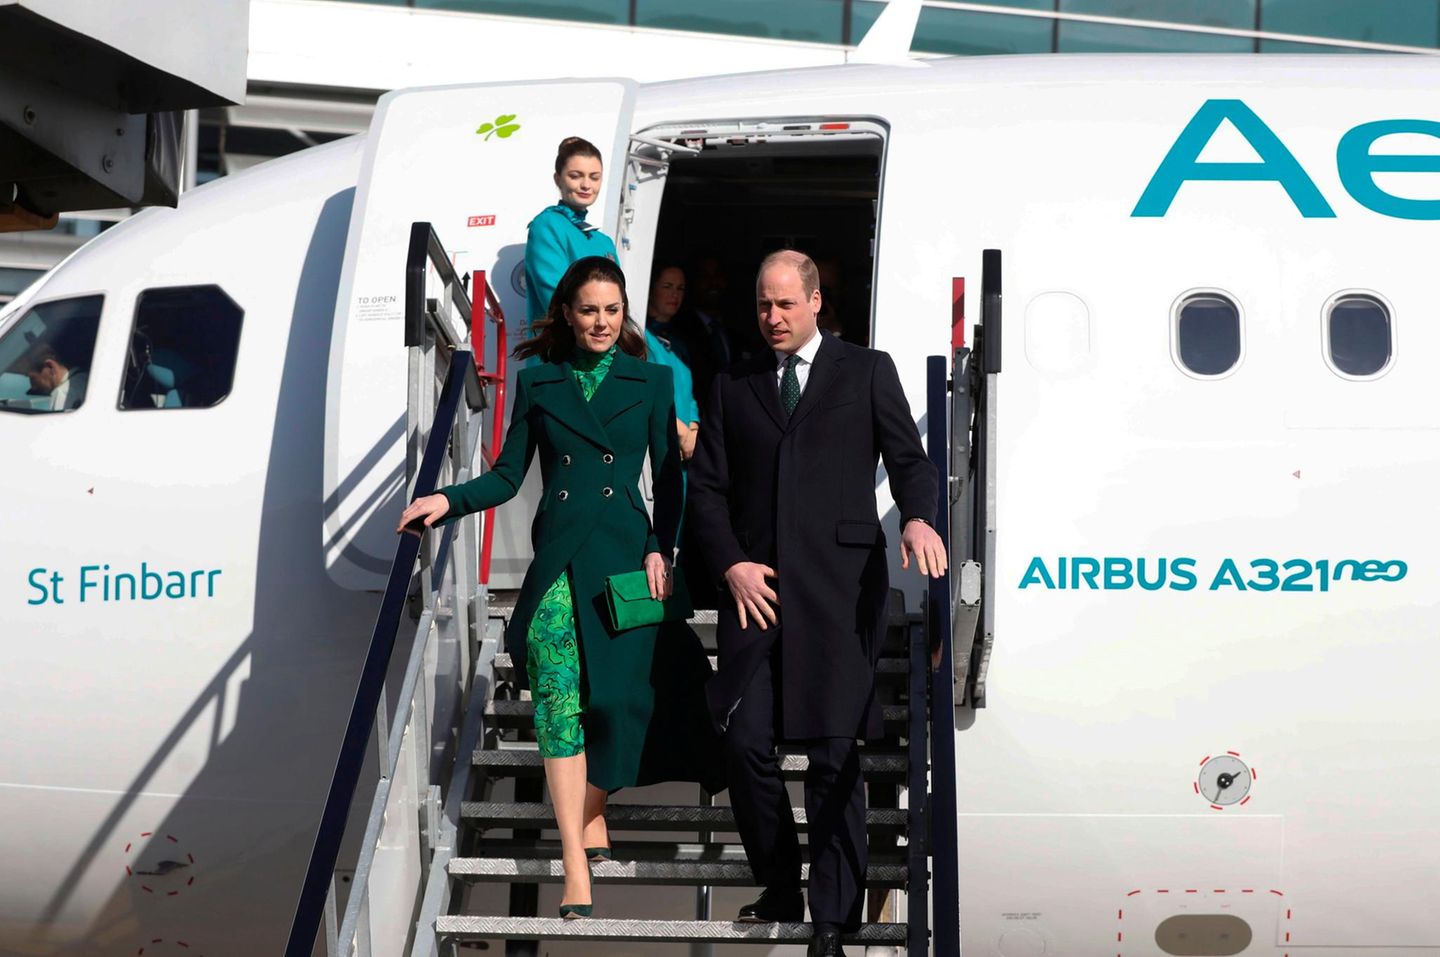 Herzlich willkommen in Irland, Herzogin Catherine und Prinz William! Das Paar landet gegen 14.35 Uhr deutscher Zeit am Flughafen von Dublin. Angereist ist es in einem öffentlichen Flugzeug der Gesellschaft Air Lingus. Kein Wunder: Das Thema Umwelt- und Klimaschutz steht auf dem Programmplan ihrer dreitägigen Reise.